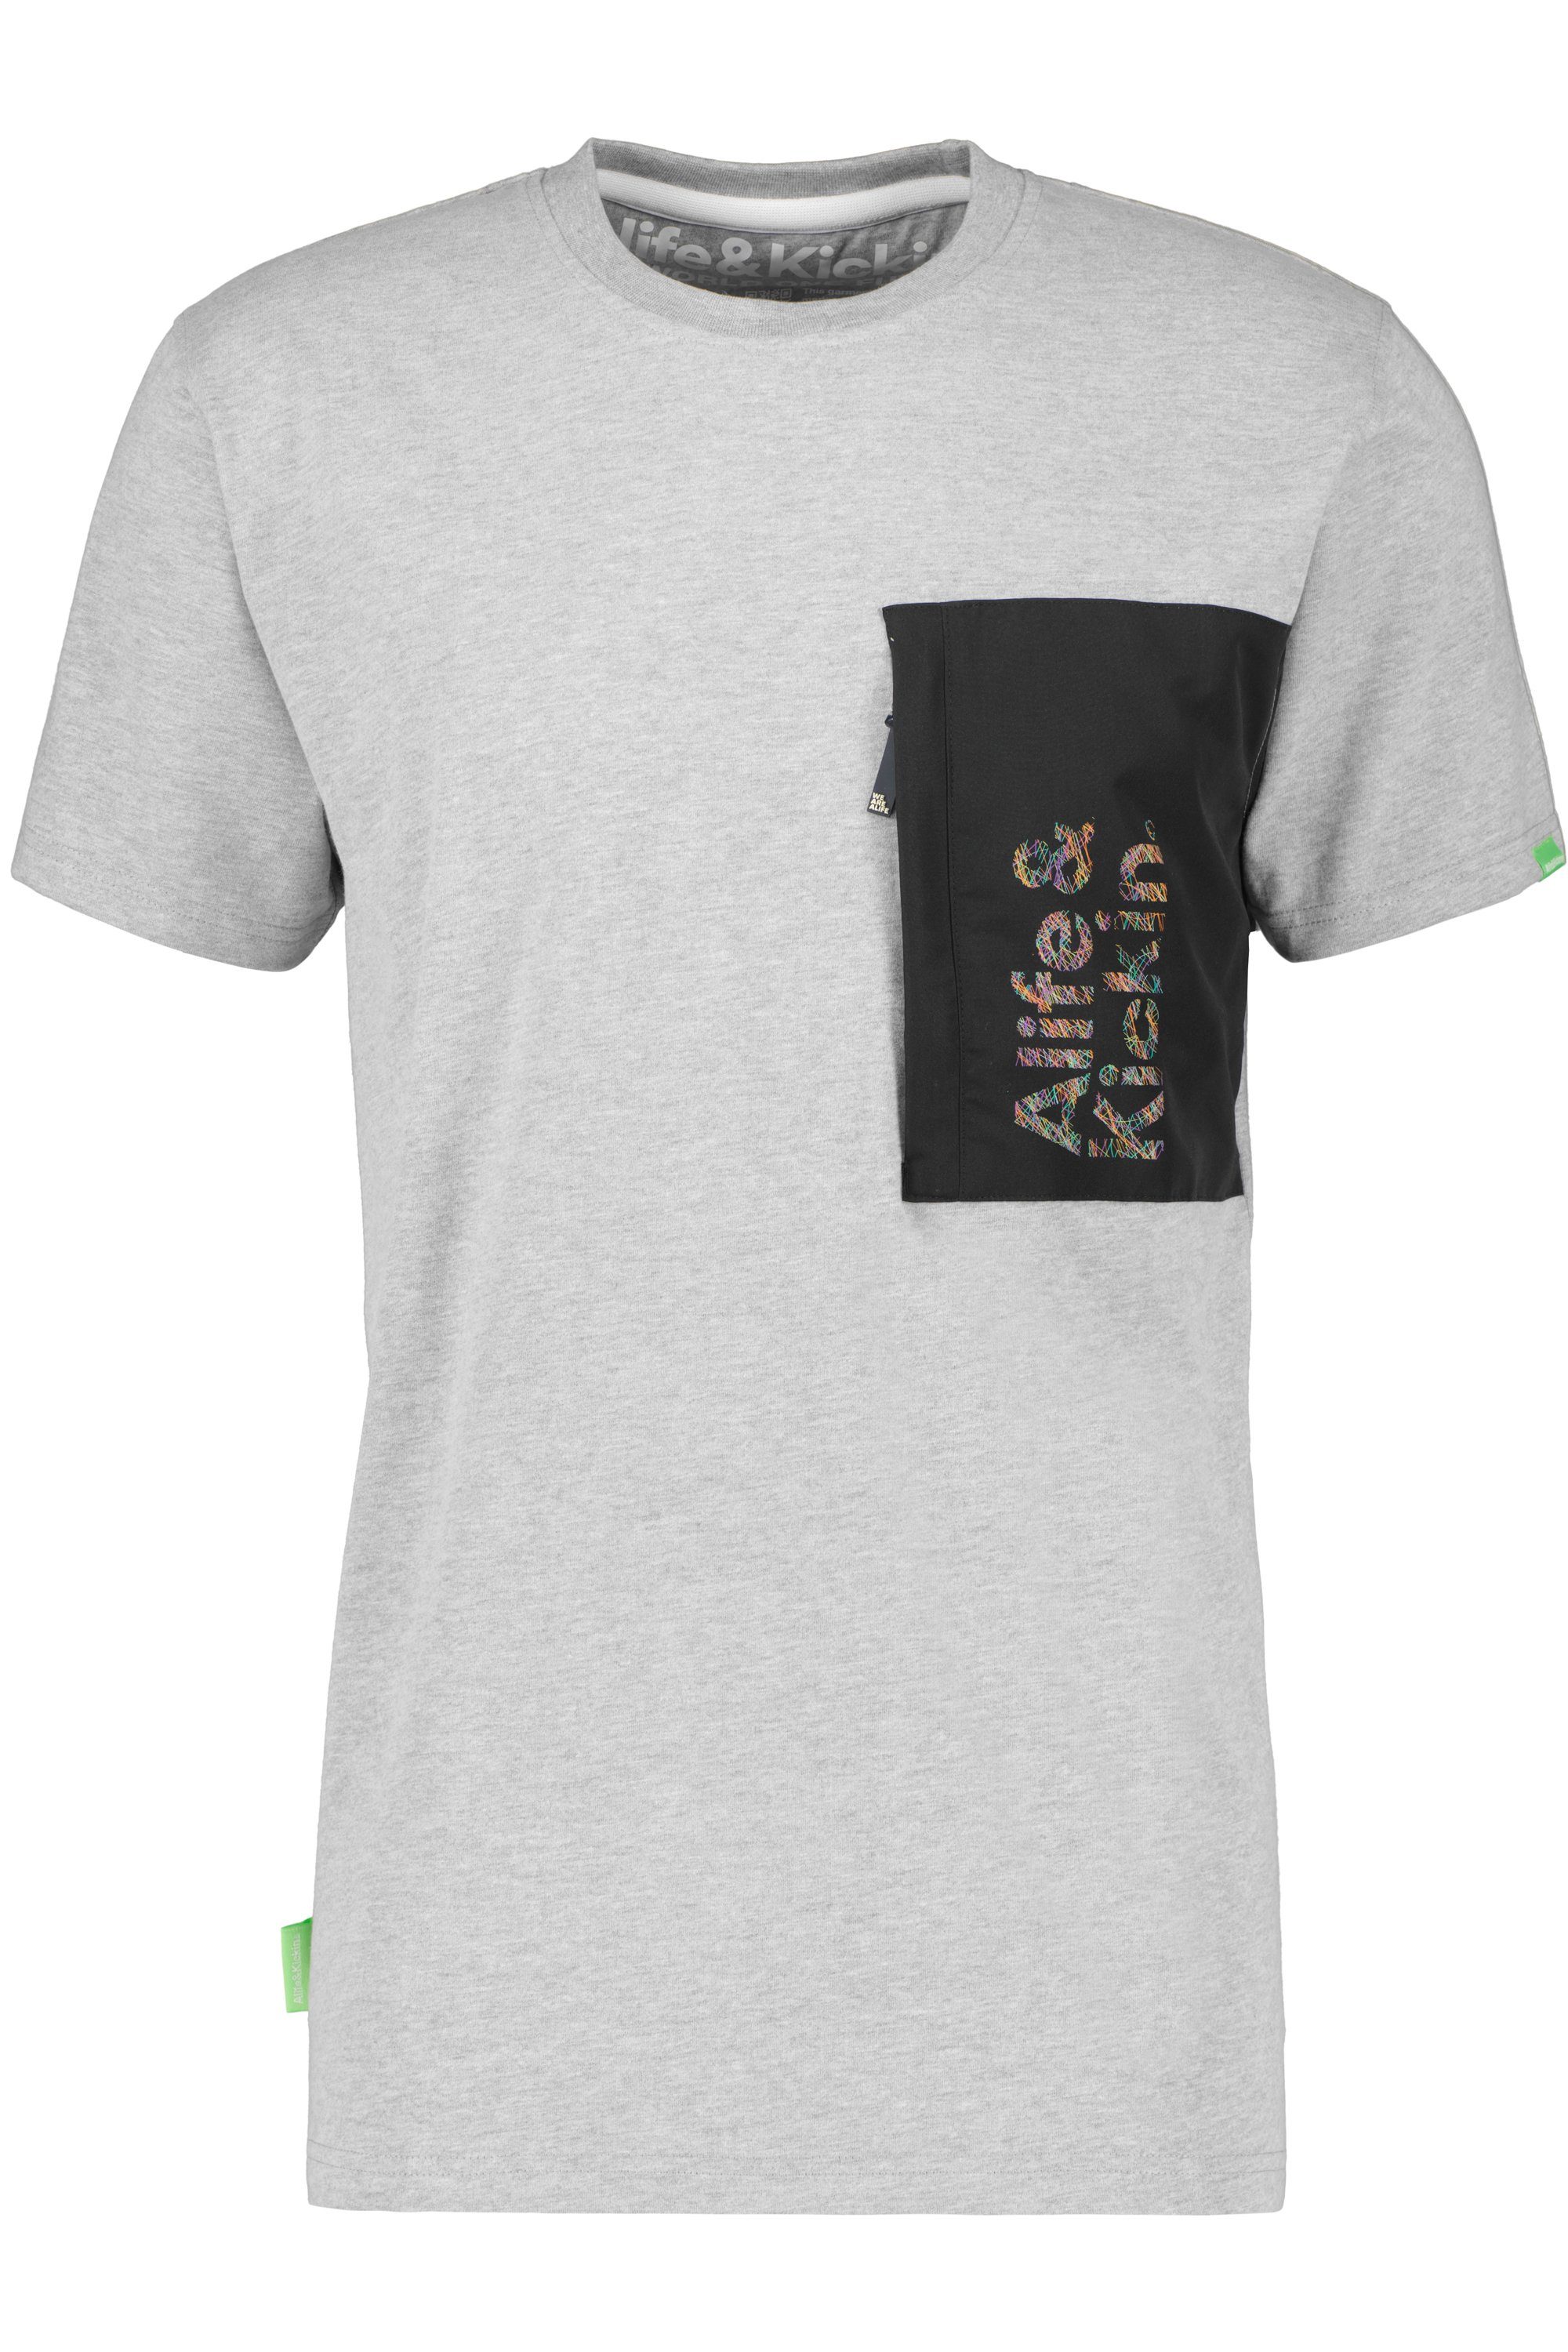 Alife & T-Shirt Herren T-Shirt Kickin steal RossAK Shirt